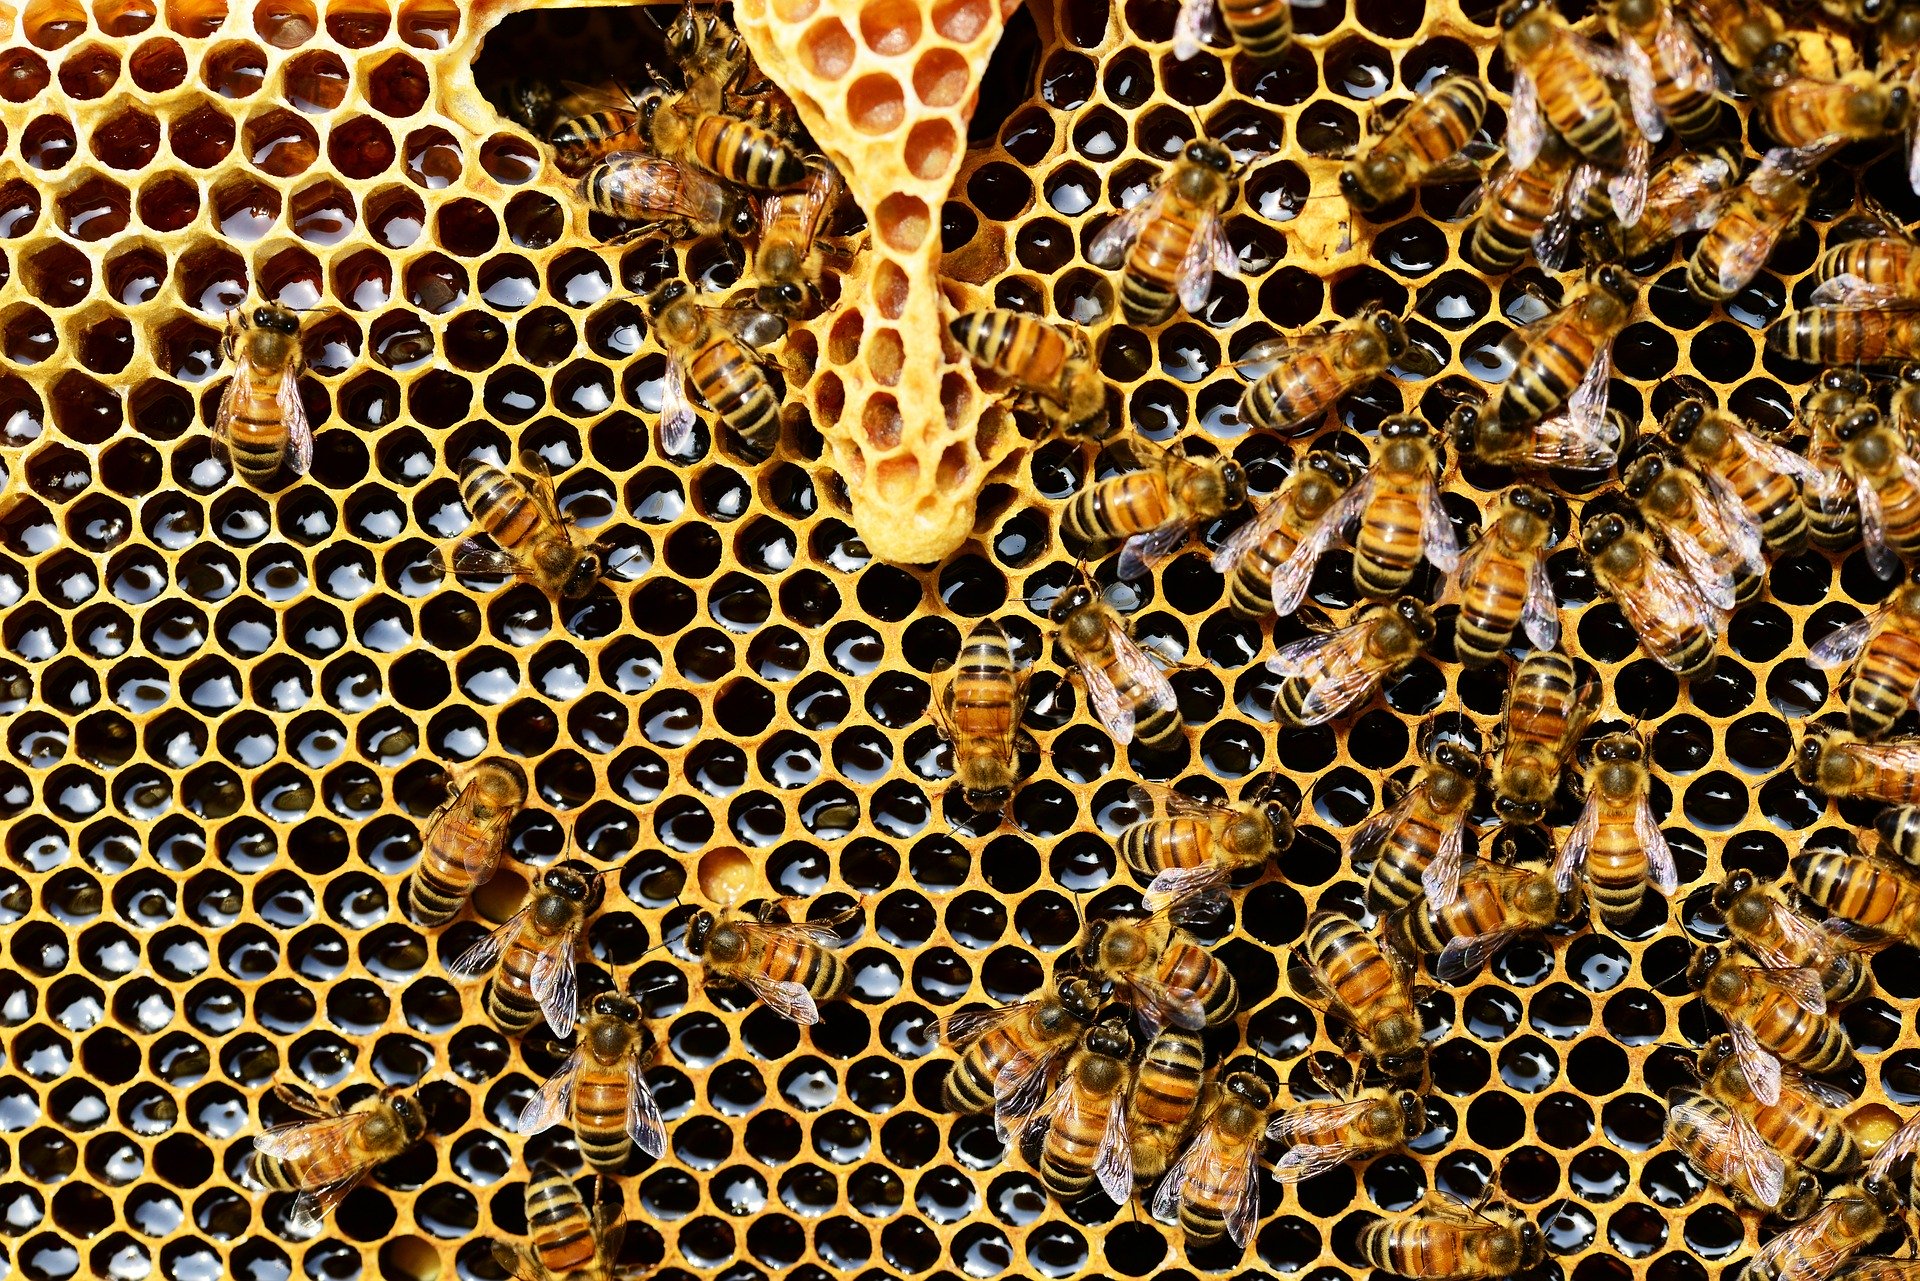 Coronavirus, il lockdown riduce i veleni per le api ma frena l’apicoltura mettendola a rischio